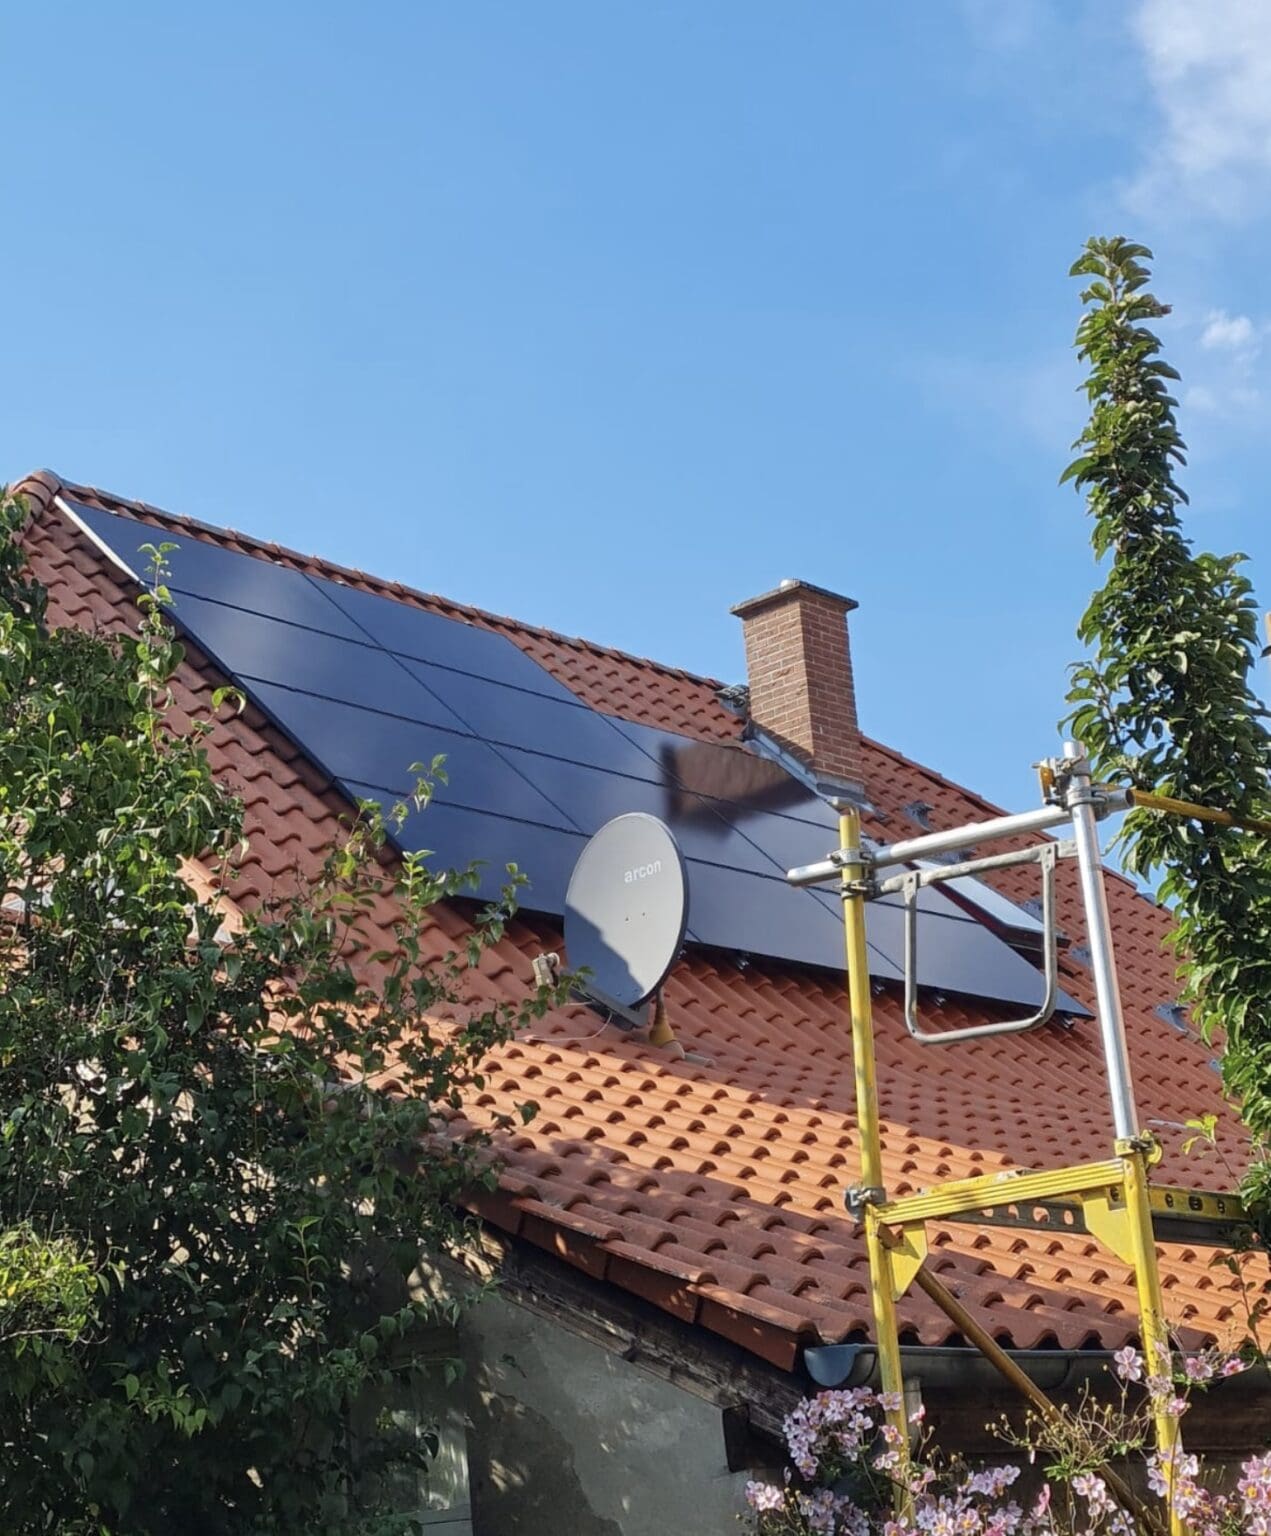 Bild eines Hauses mit installierten Photovoltaikmodulen, die Sonnenlicht in Strom umwandeln